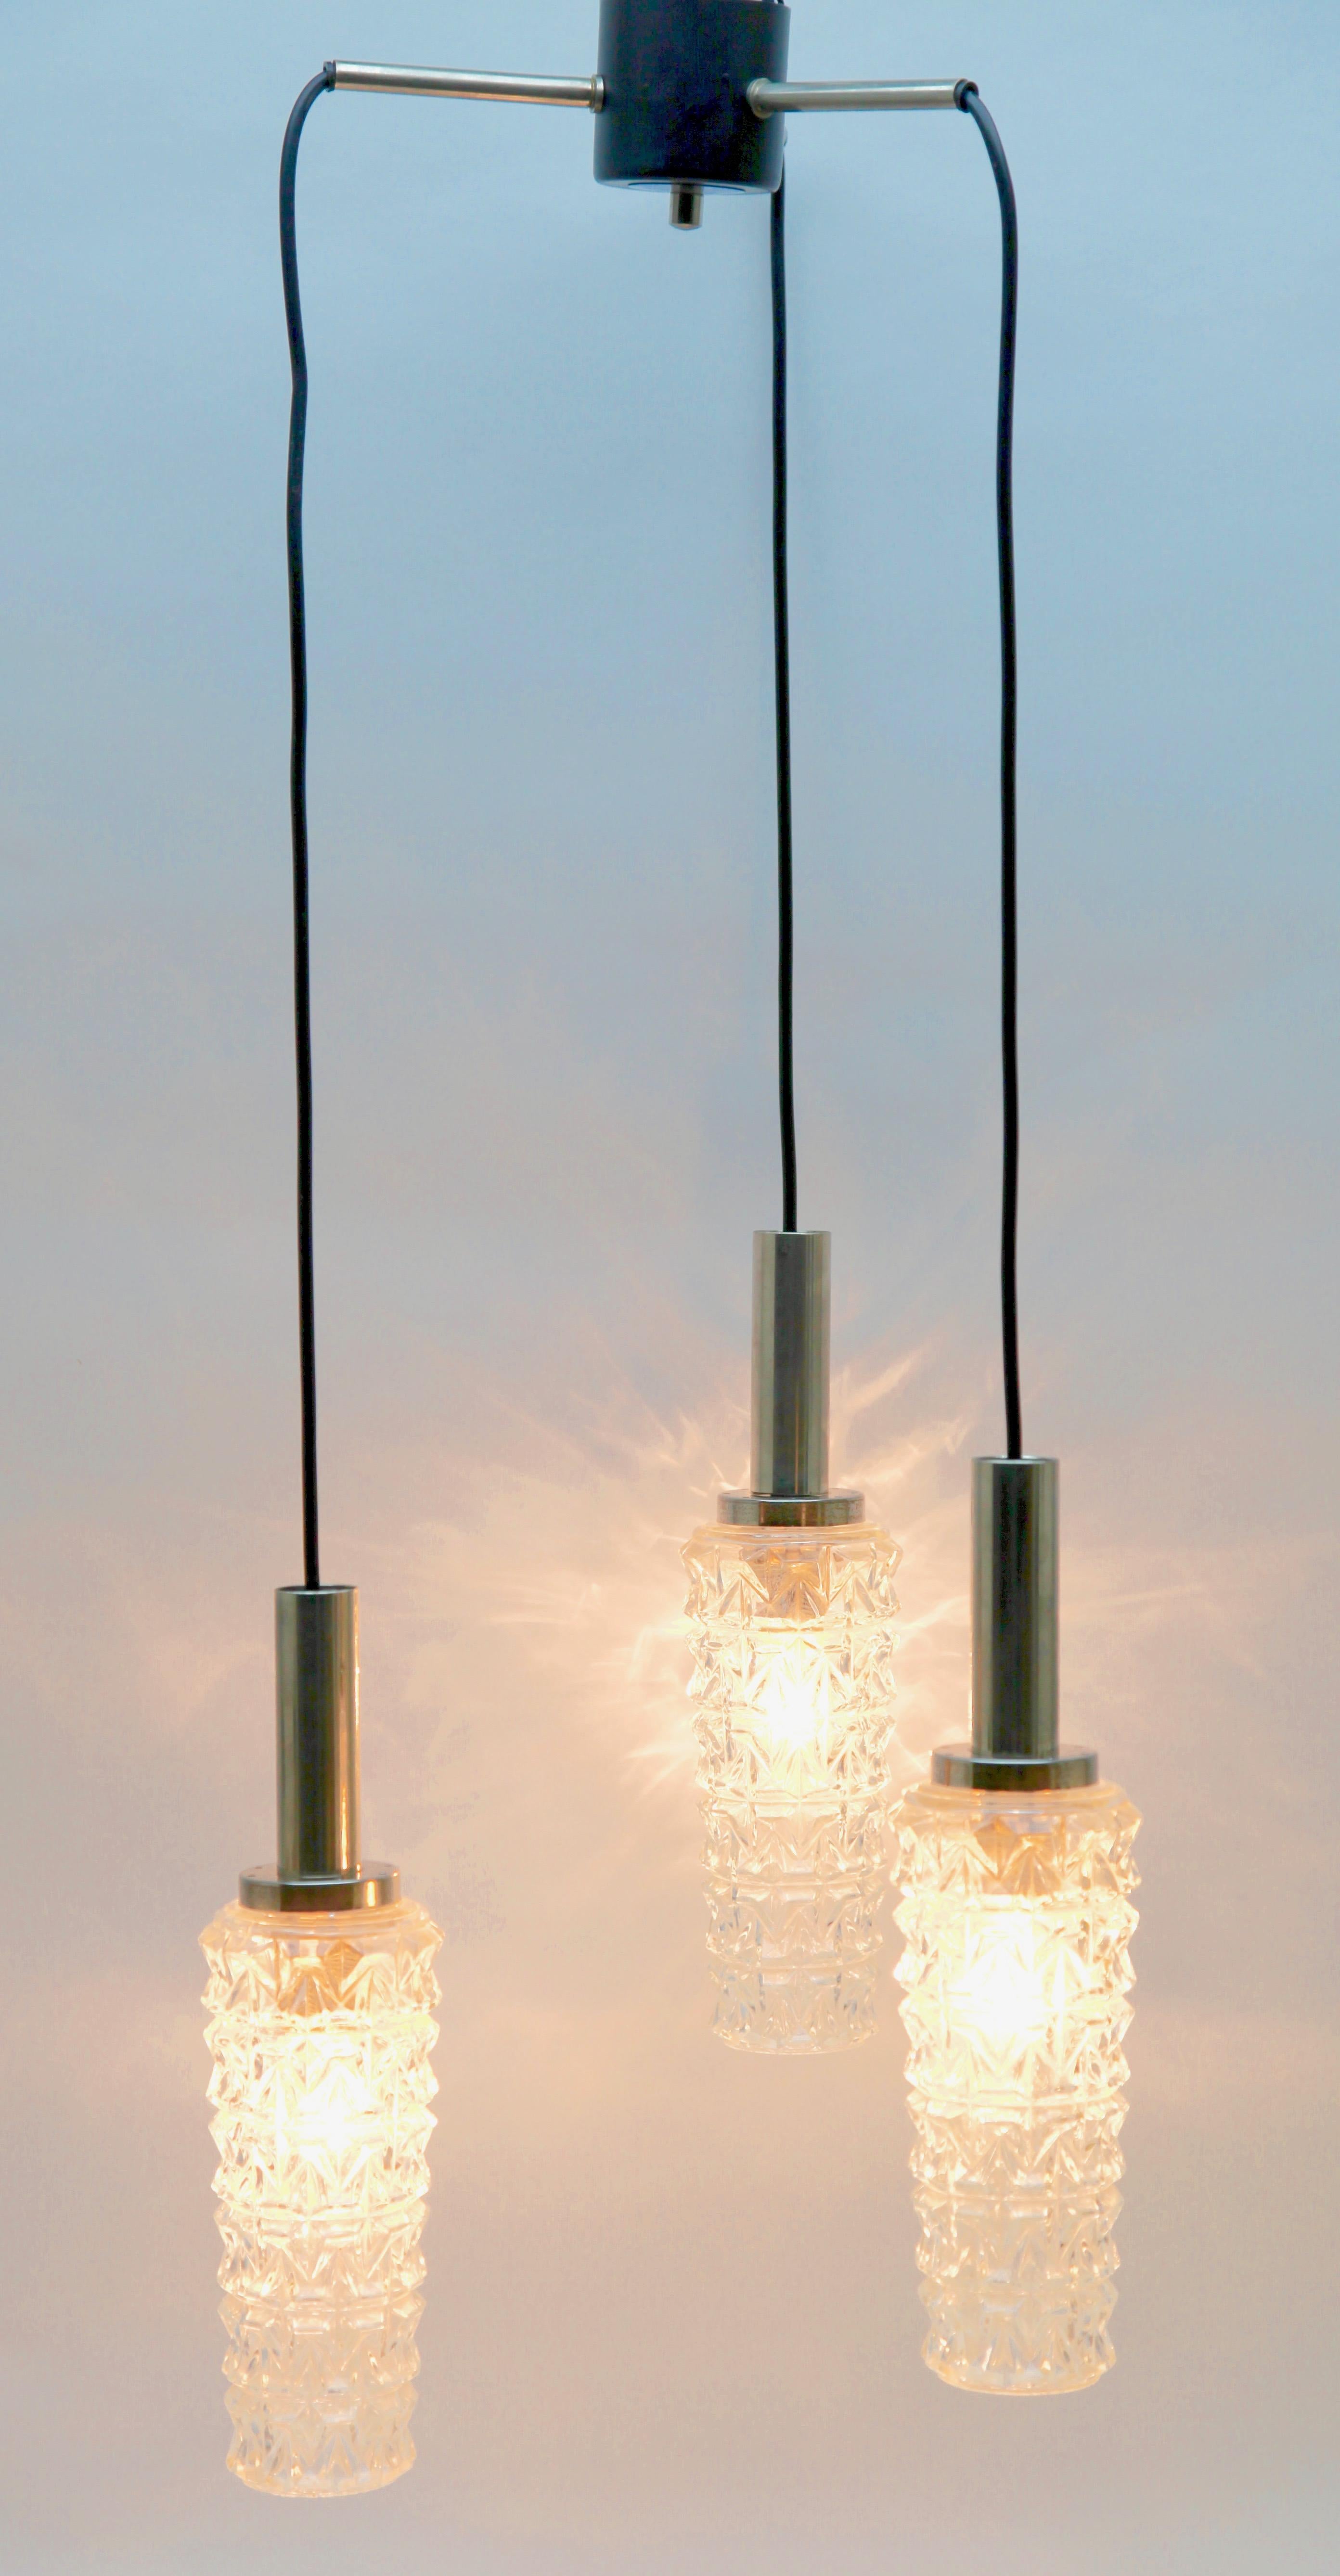 Lampe suspendue chromée du milieu du siècle à trois câbles avec flexibles réglables, ce qui permet de suspendre les lampes à différentes hauteurs en rétractant les câbles dans la plaque de plafond. Les trois lampes sont maintenues par une simple